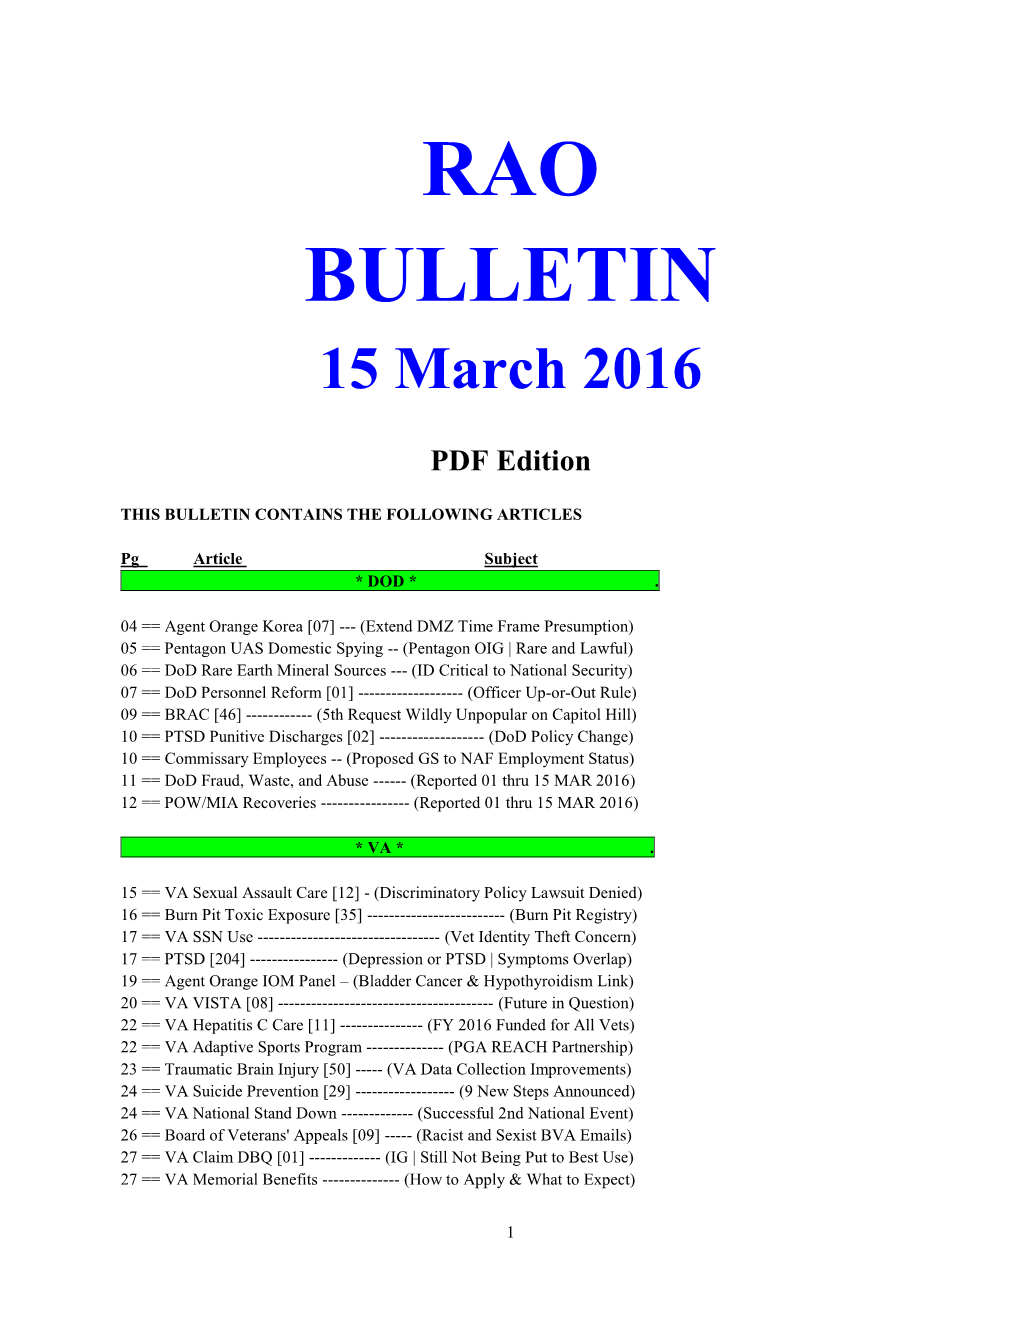 Bulletin160315 (PDF)